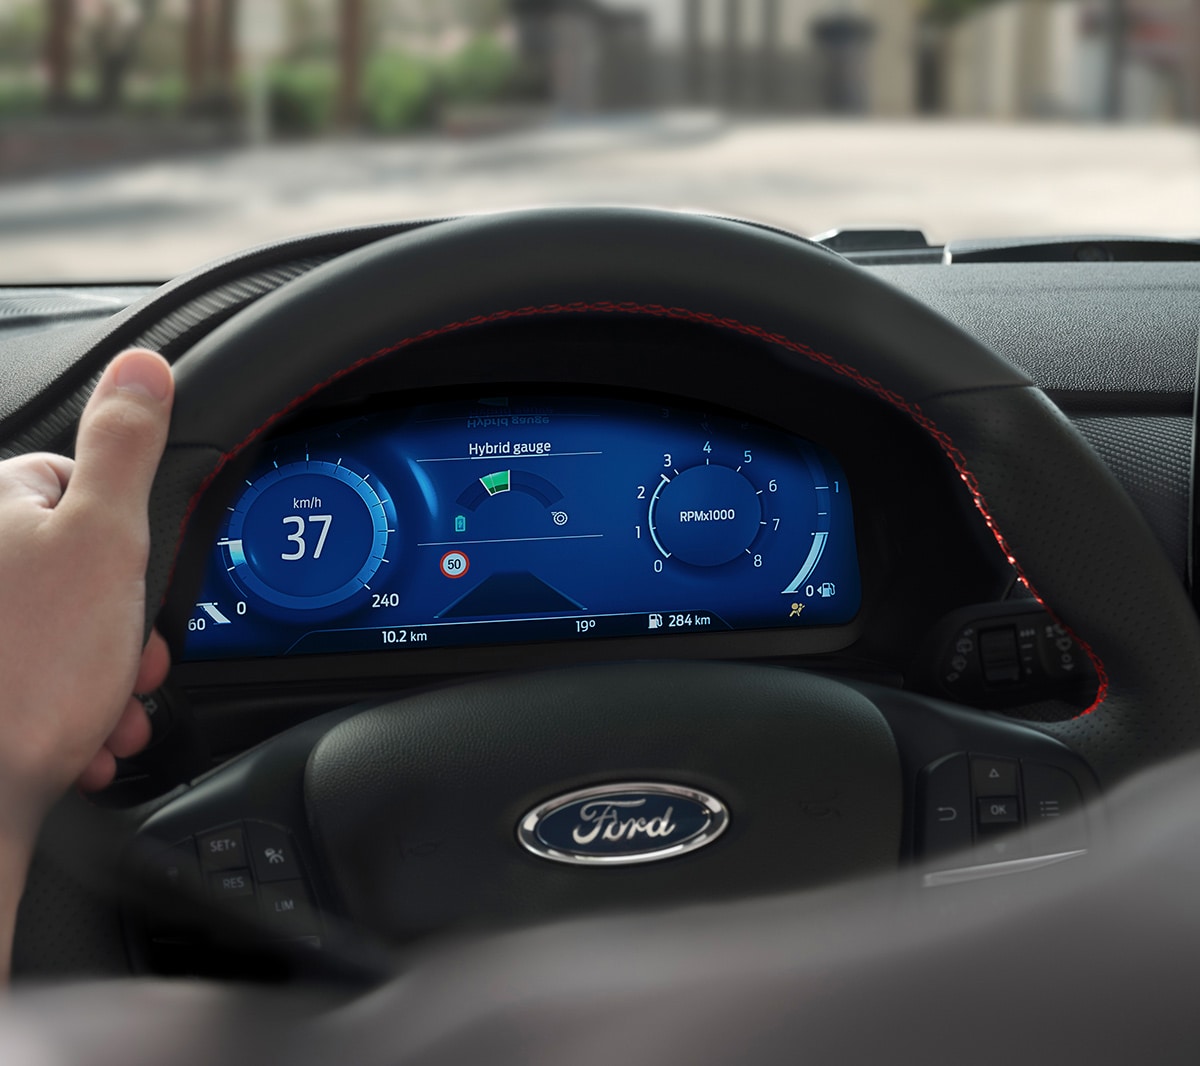 Ford Fiesta. Innenraum-Detailansicht des Lenkrads mit digitaler Instrumententafel im Hintergrund.